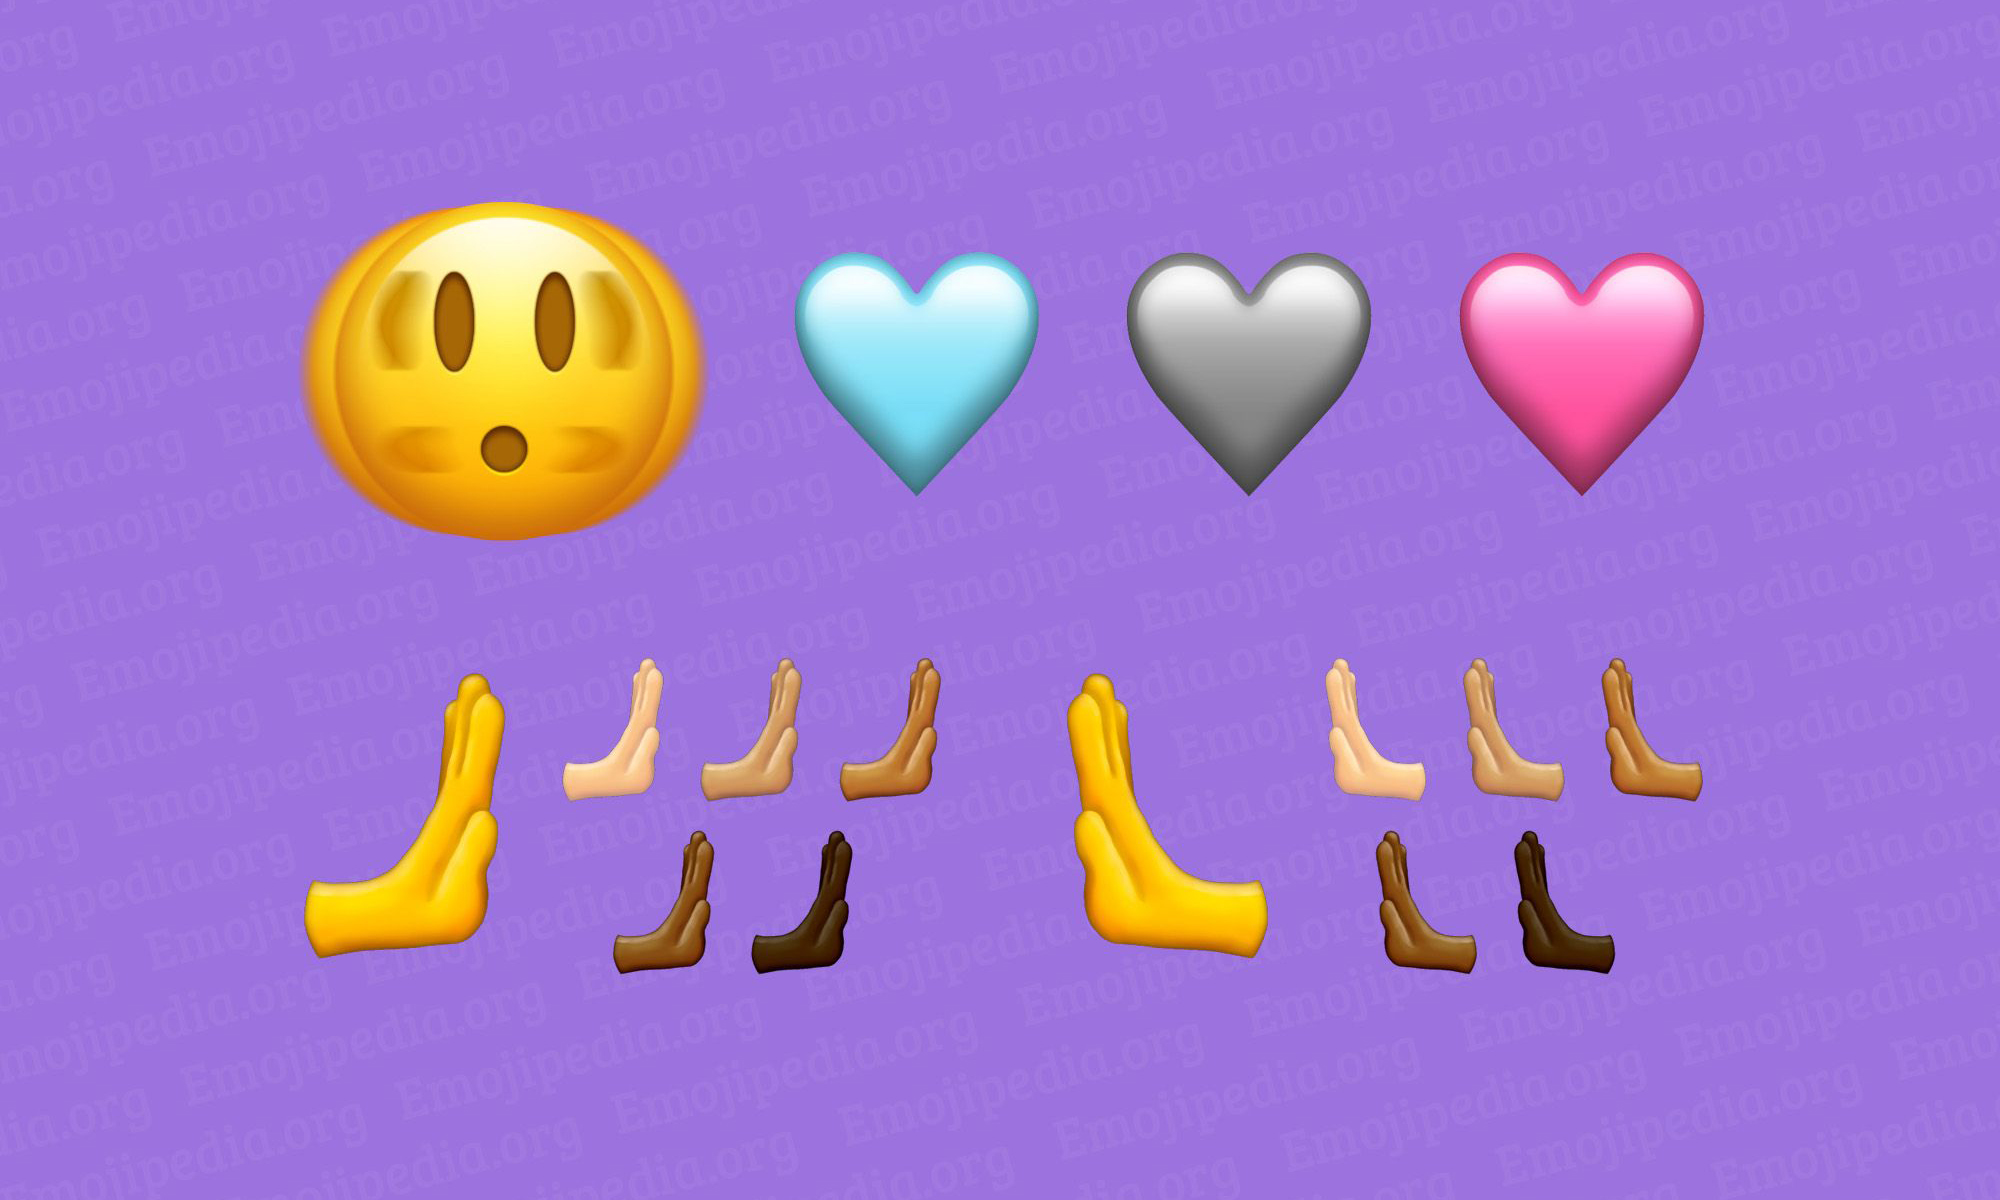 Unicode 联盟将为 Emoji 15 增加全新表情符号